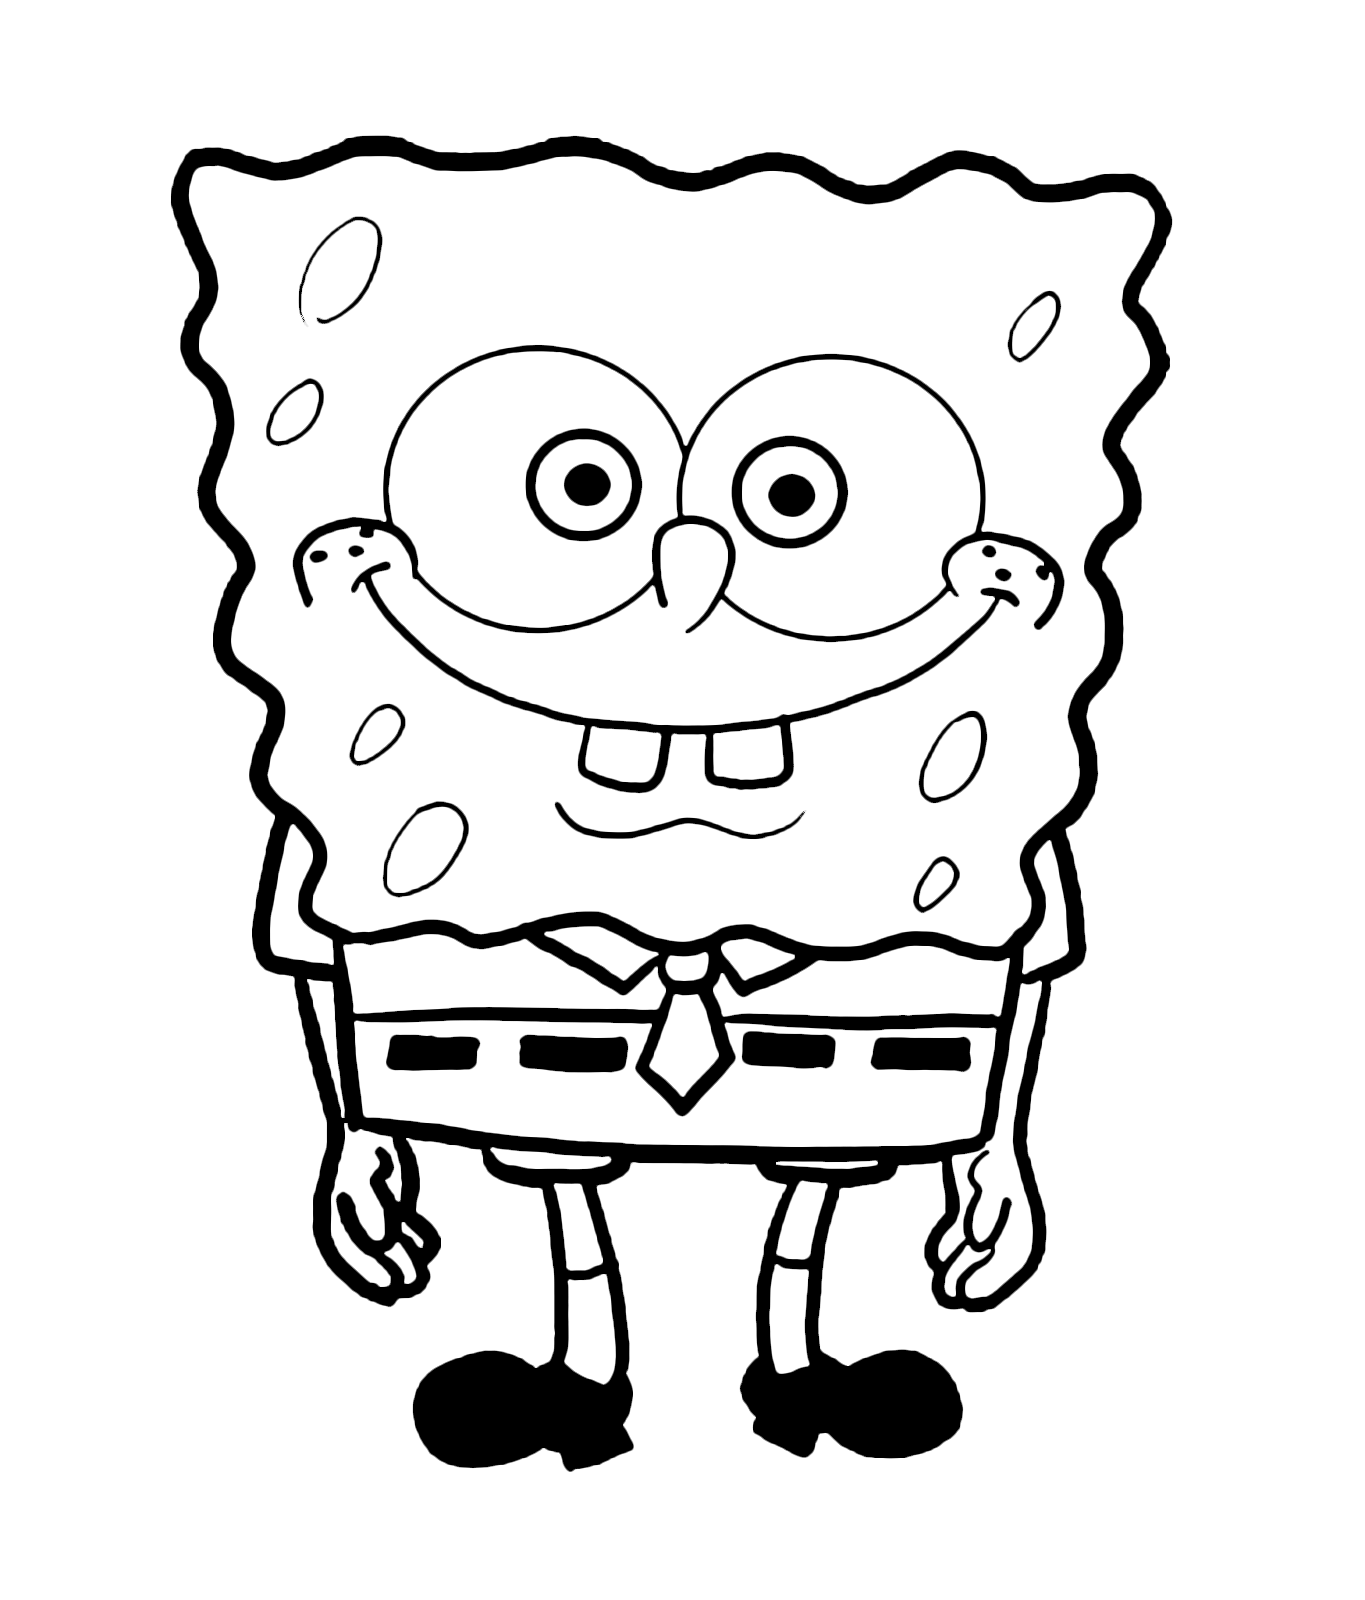 Spongebob Expressions